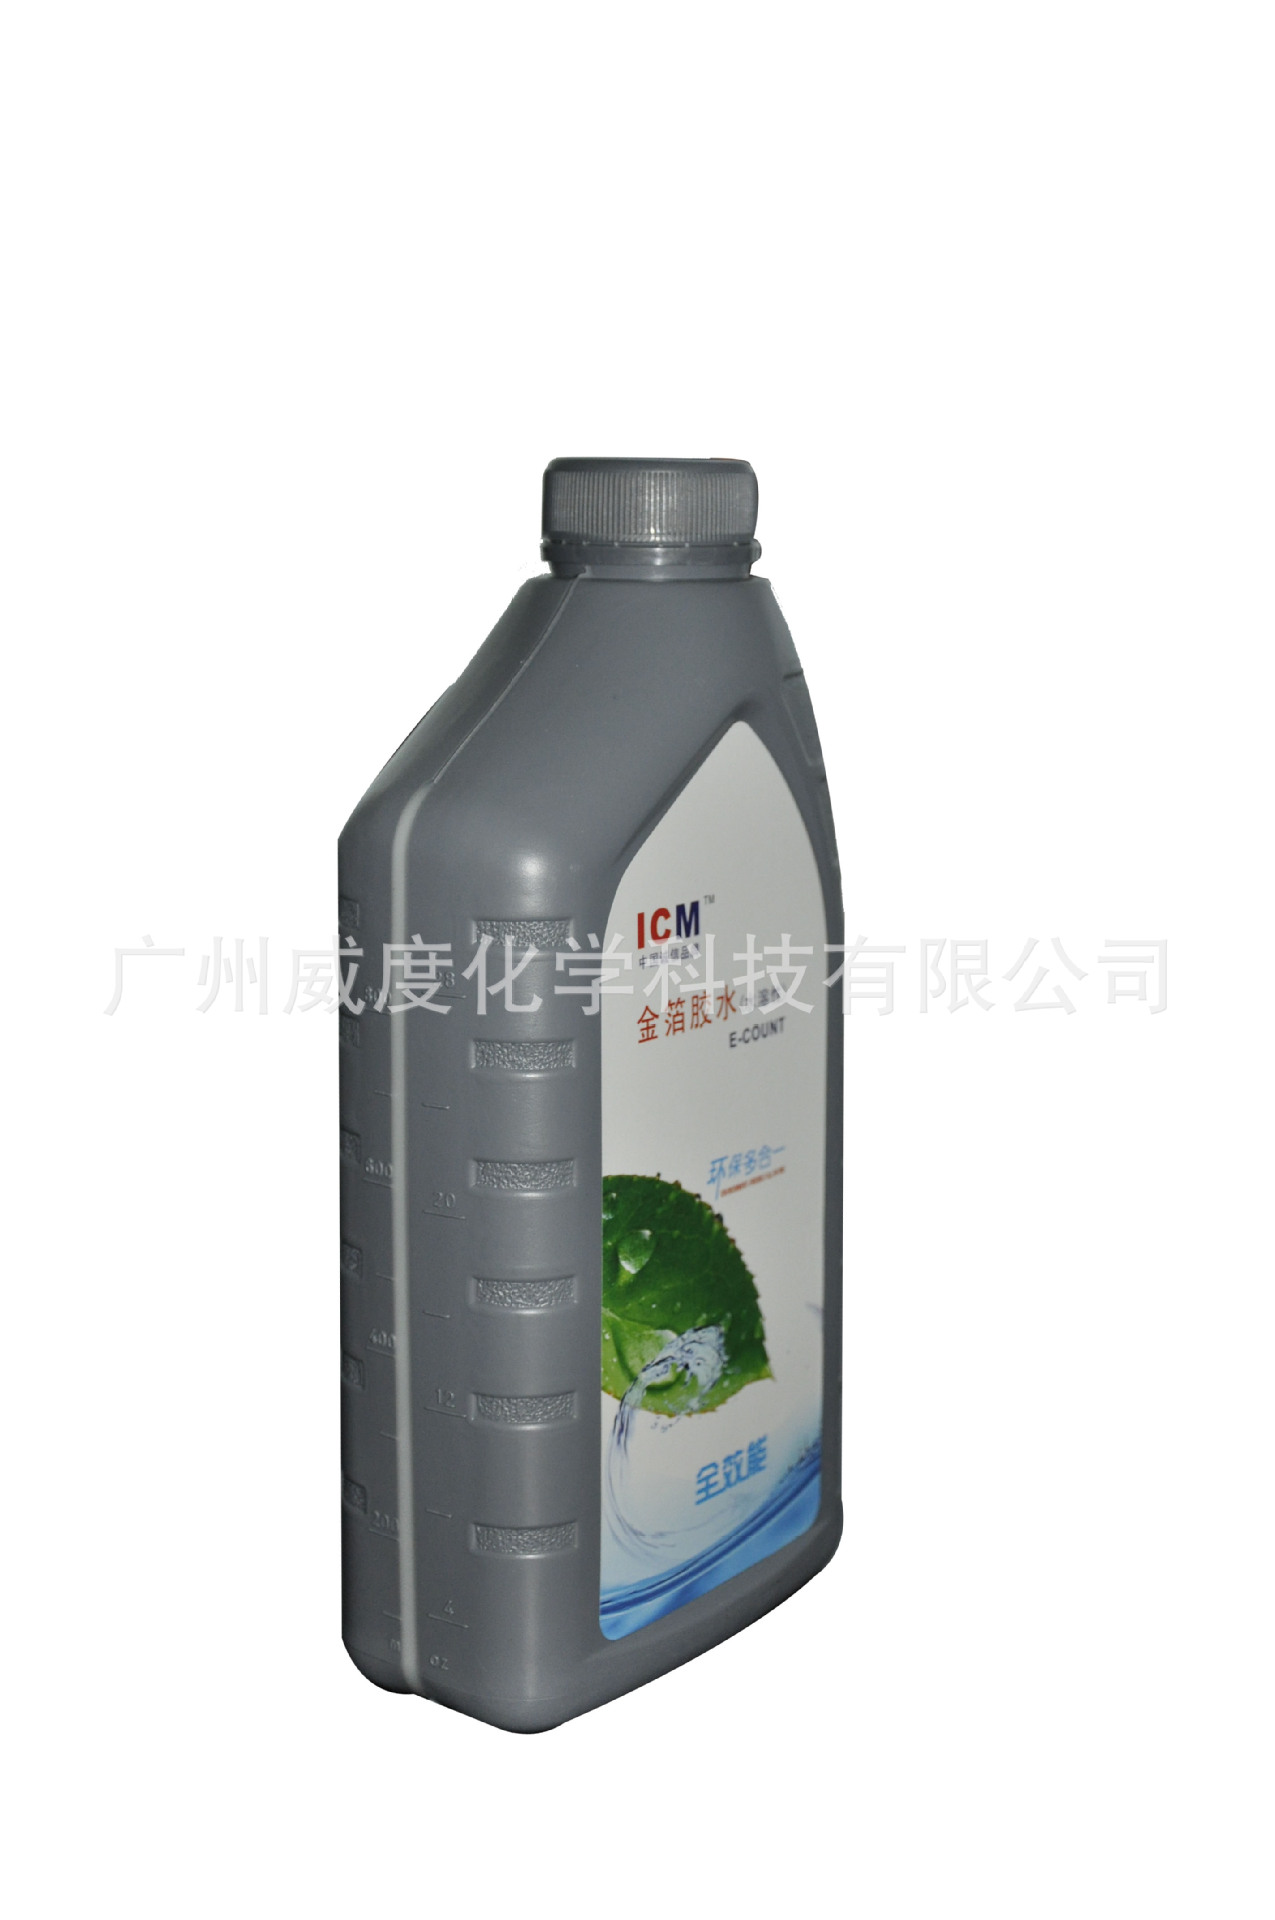 胶粘剂-贴金箔水性环保胶水 ICM | E-COUNT贴